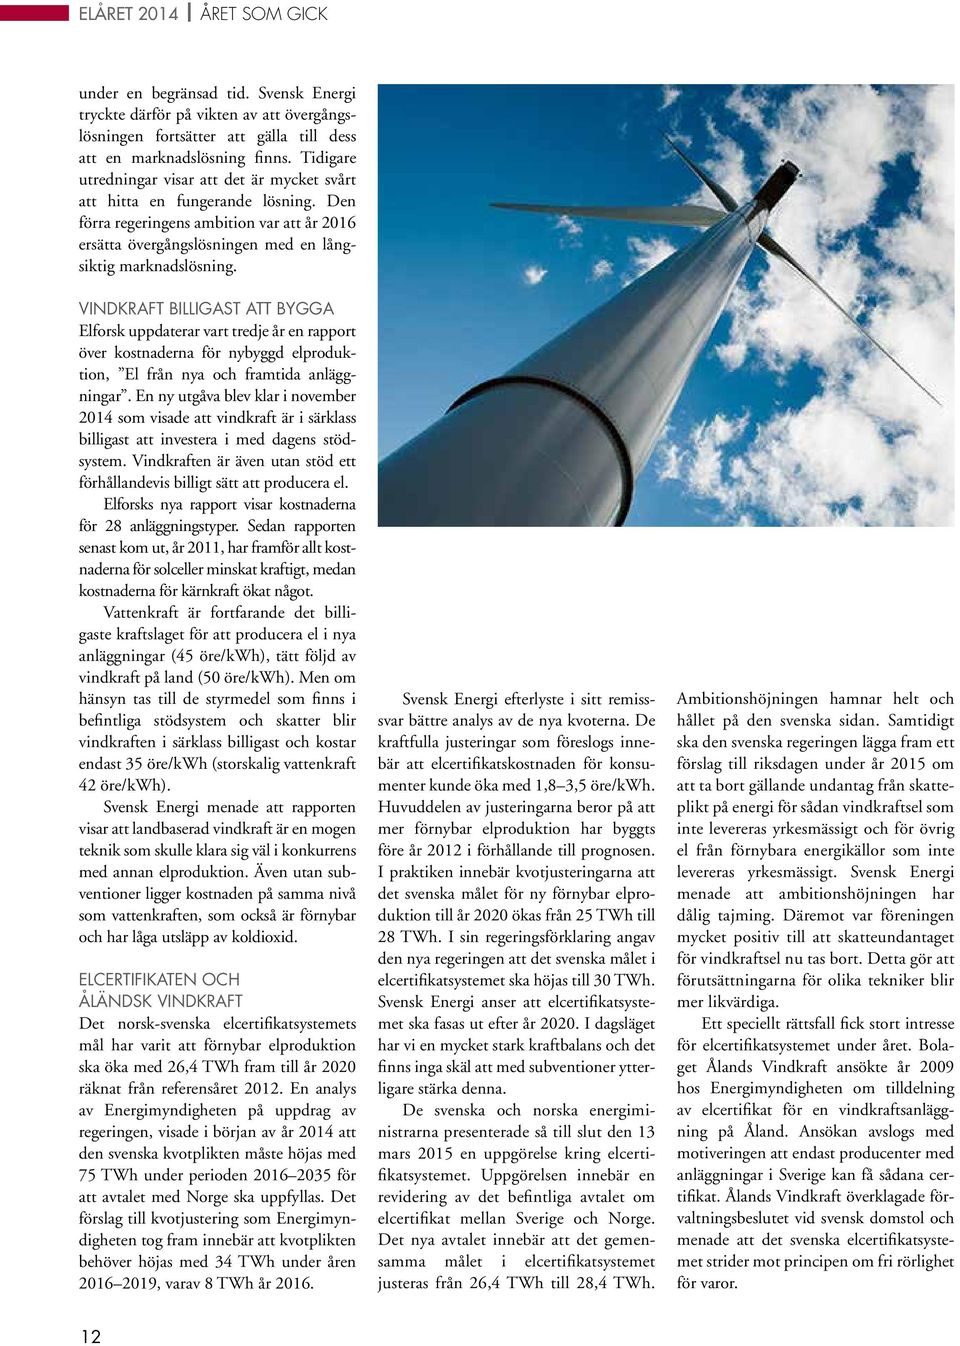 VINDKRAFT BILLIGAST ATT BYGGA Elforsk uppdaterar vart tredje år en rapport över kostnaderna för nybyggd elproduktion, El från nya och framtida anläggningar.